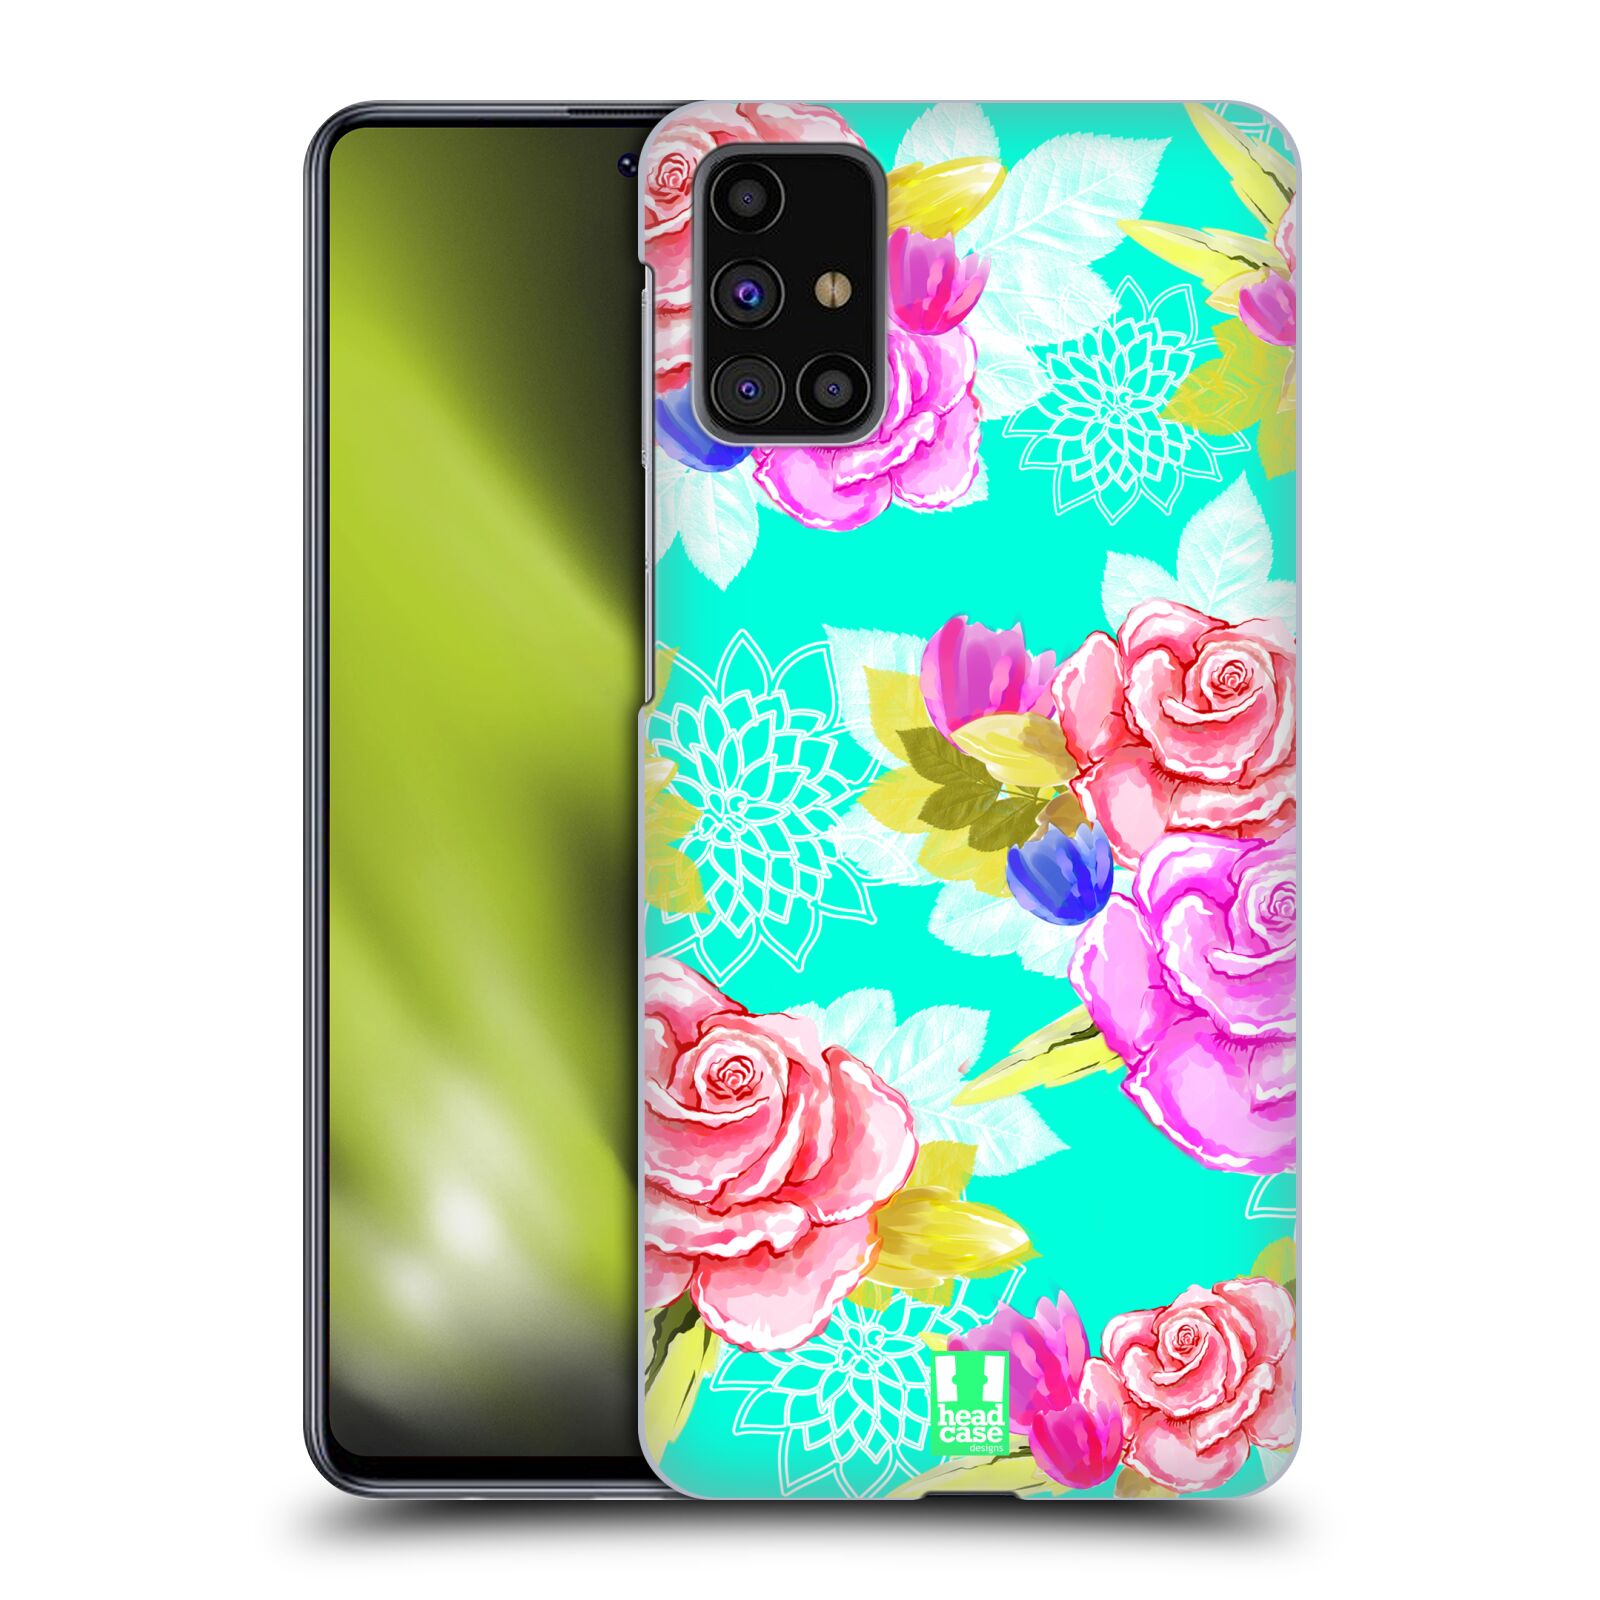 Plastový obal HEAD CASE na mobil Samsung Galaxy M31s vzor Malované květiny barevné AQUA MODRÁ